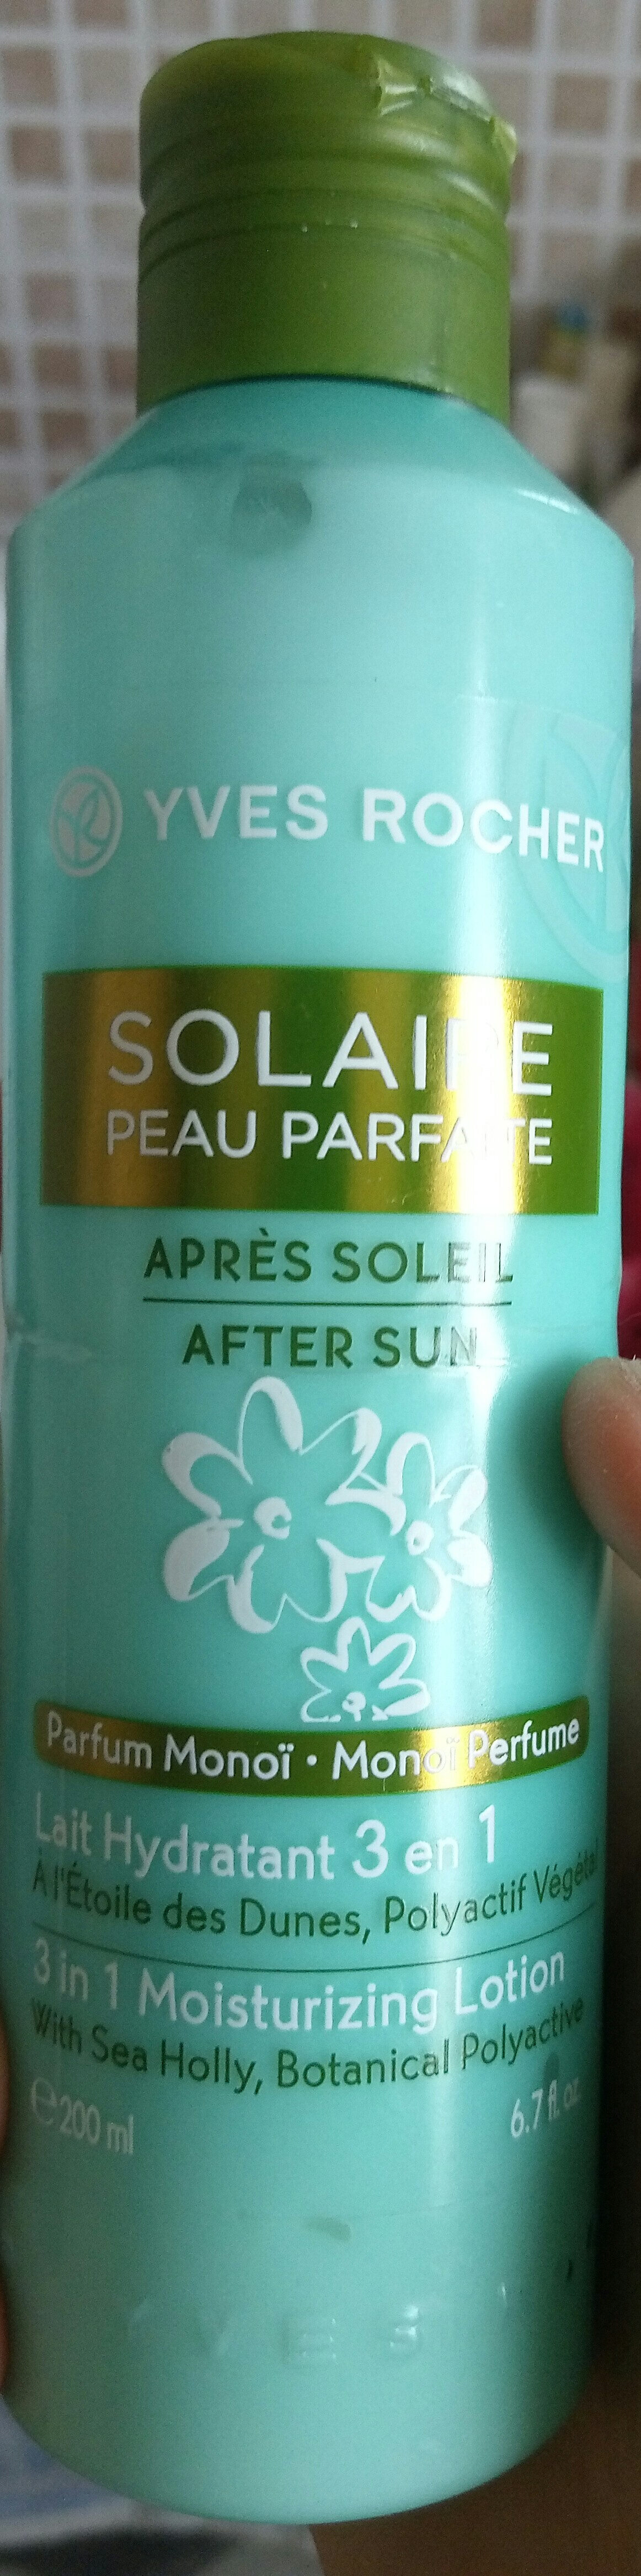 SOLAIRE PEAU PARFAITE - Product - fr